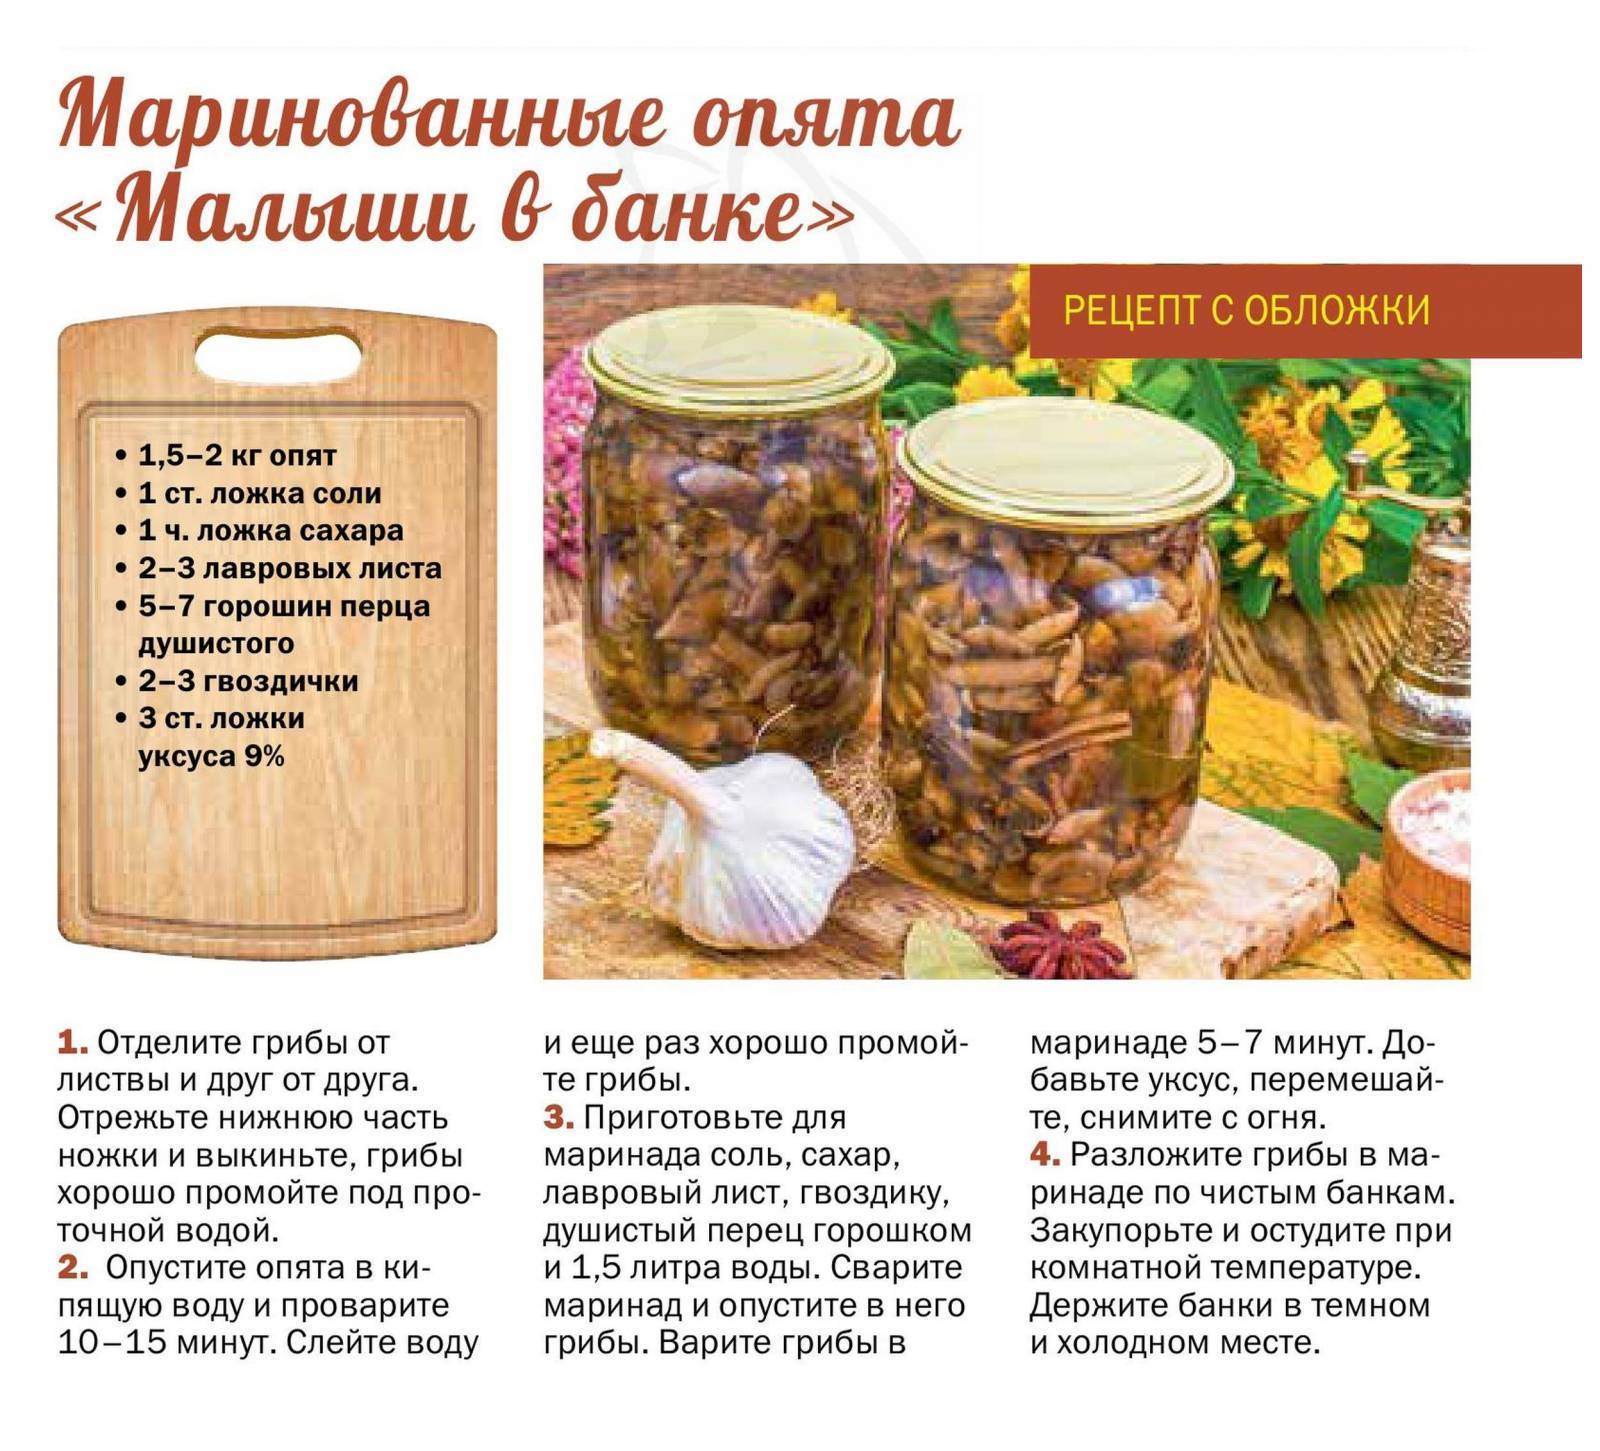 Огурцы маринованные на зиму - рецепты заготовок